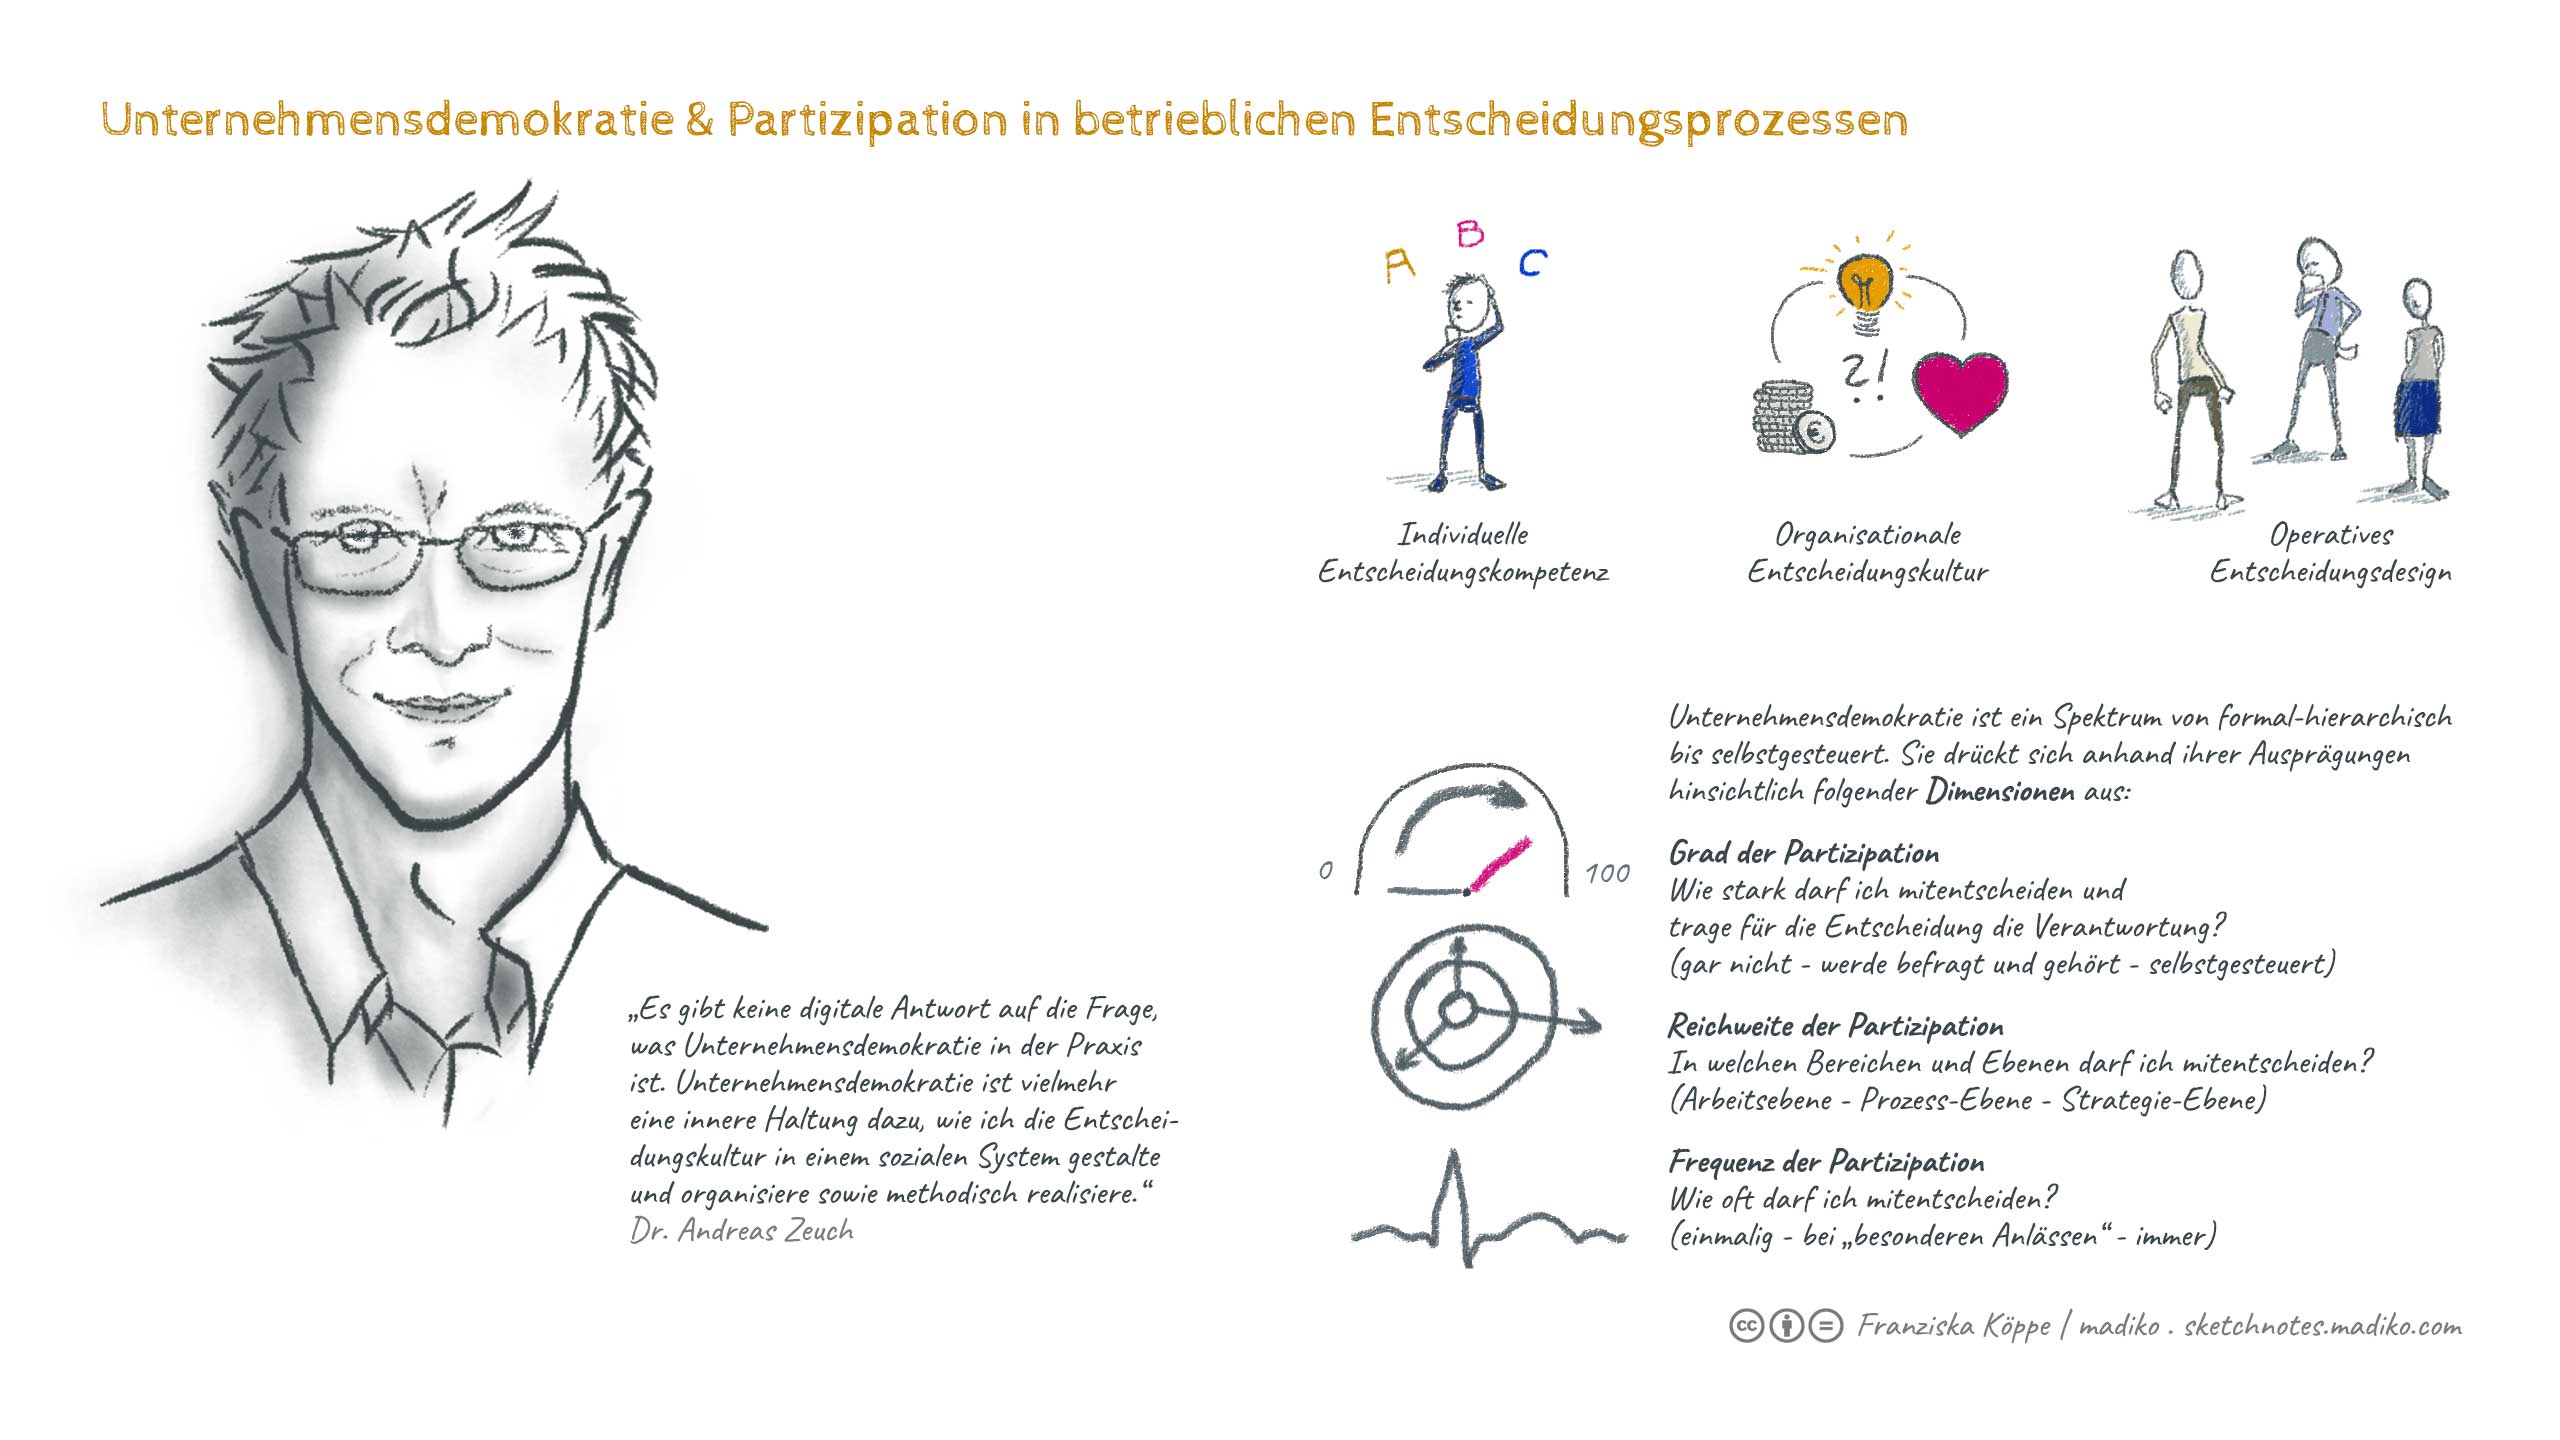 Sketchnotes: Unternehmensdemokratie & Partizipation in betrieblichen Entscheidungsprozessen. Bild: cc Franziska Köppe | madiko